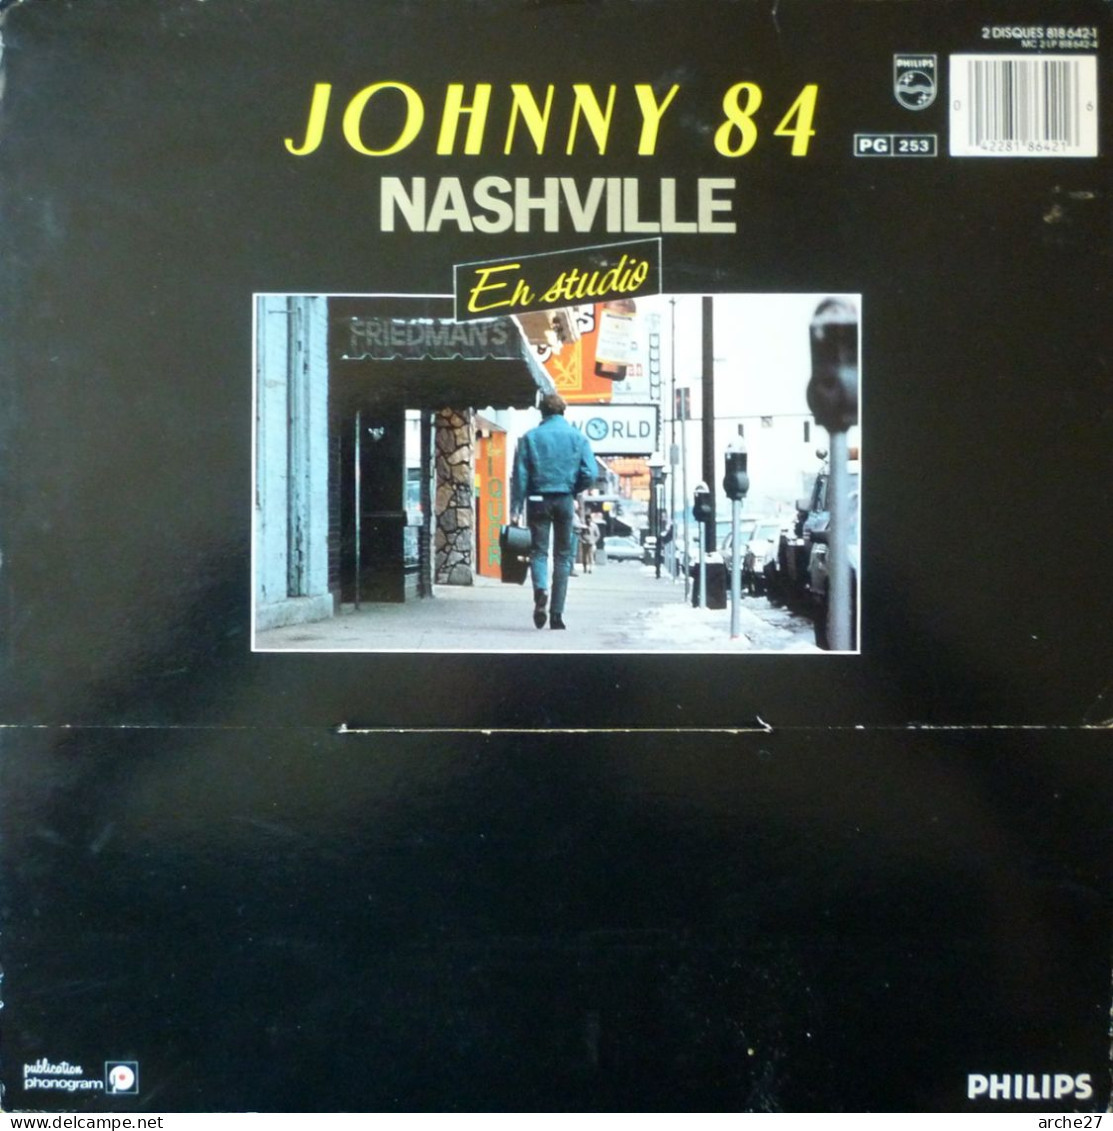 JOHNNY HALLYDAY - LP - 33T - Disque Vinyle - Coffret étui 2 Disques - Hallyday 84 Nashville - 818642 - Rock